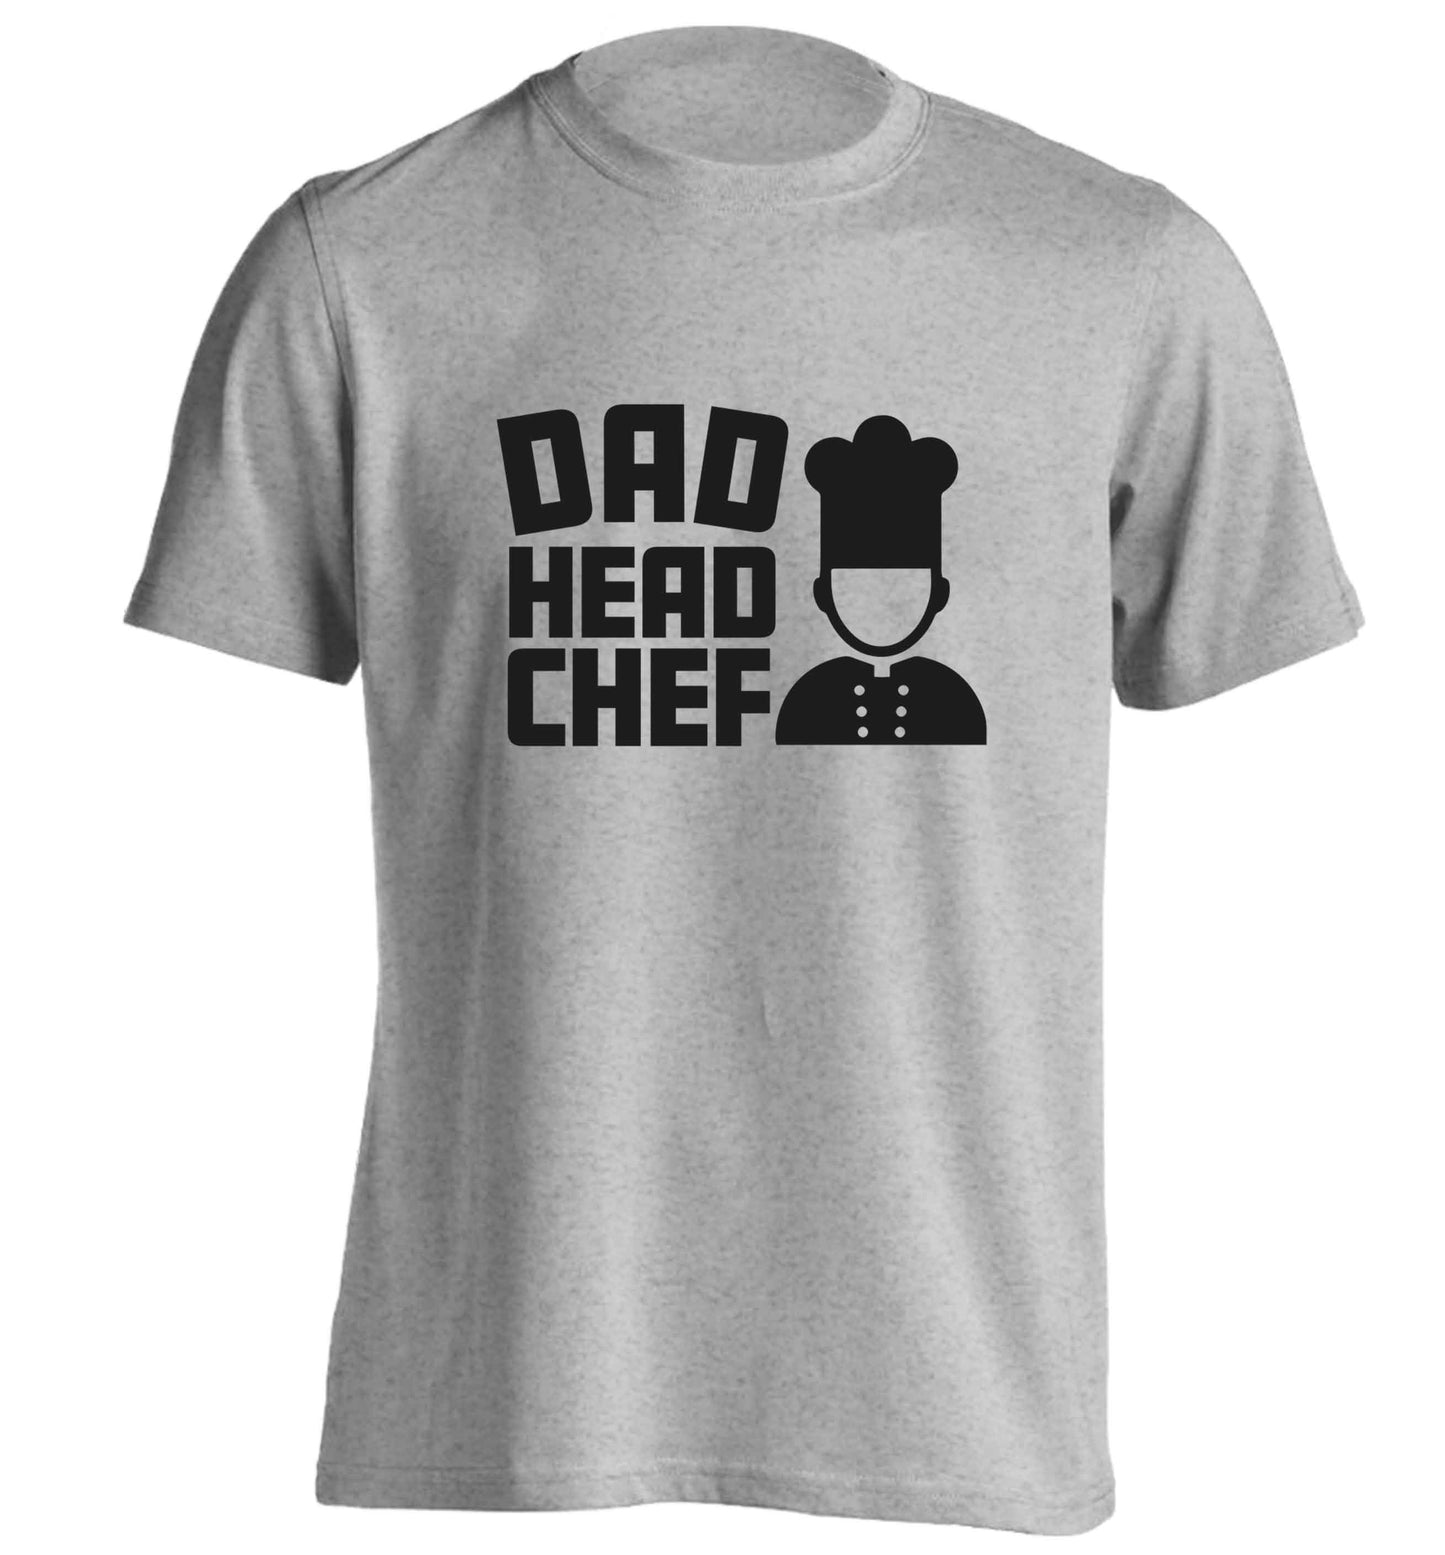 Dad head chef adults unisex grey Tshirt 2XL